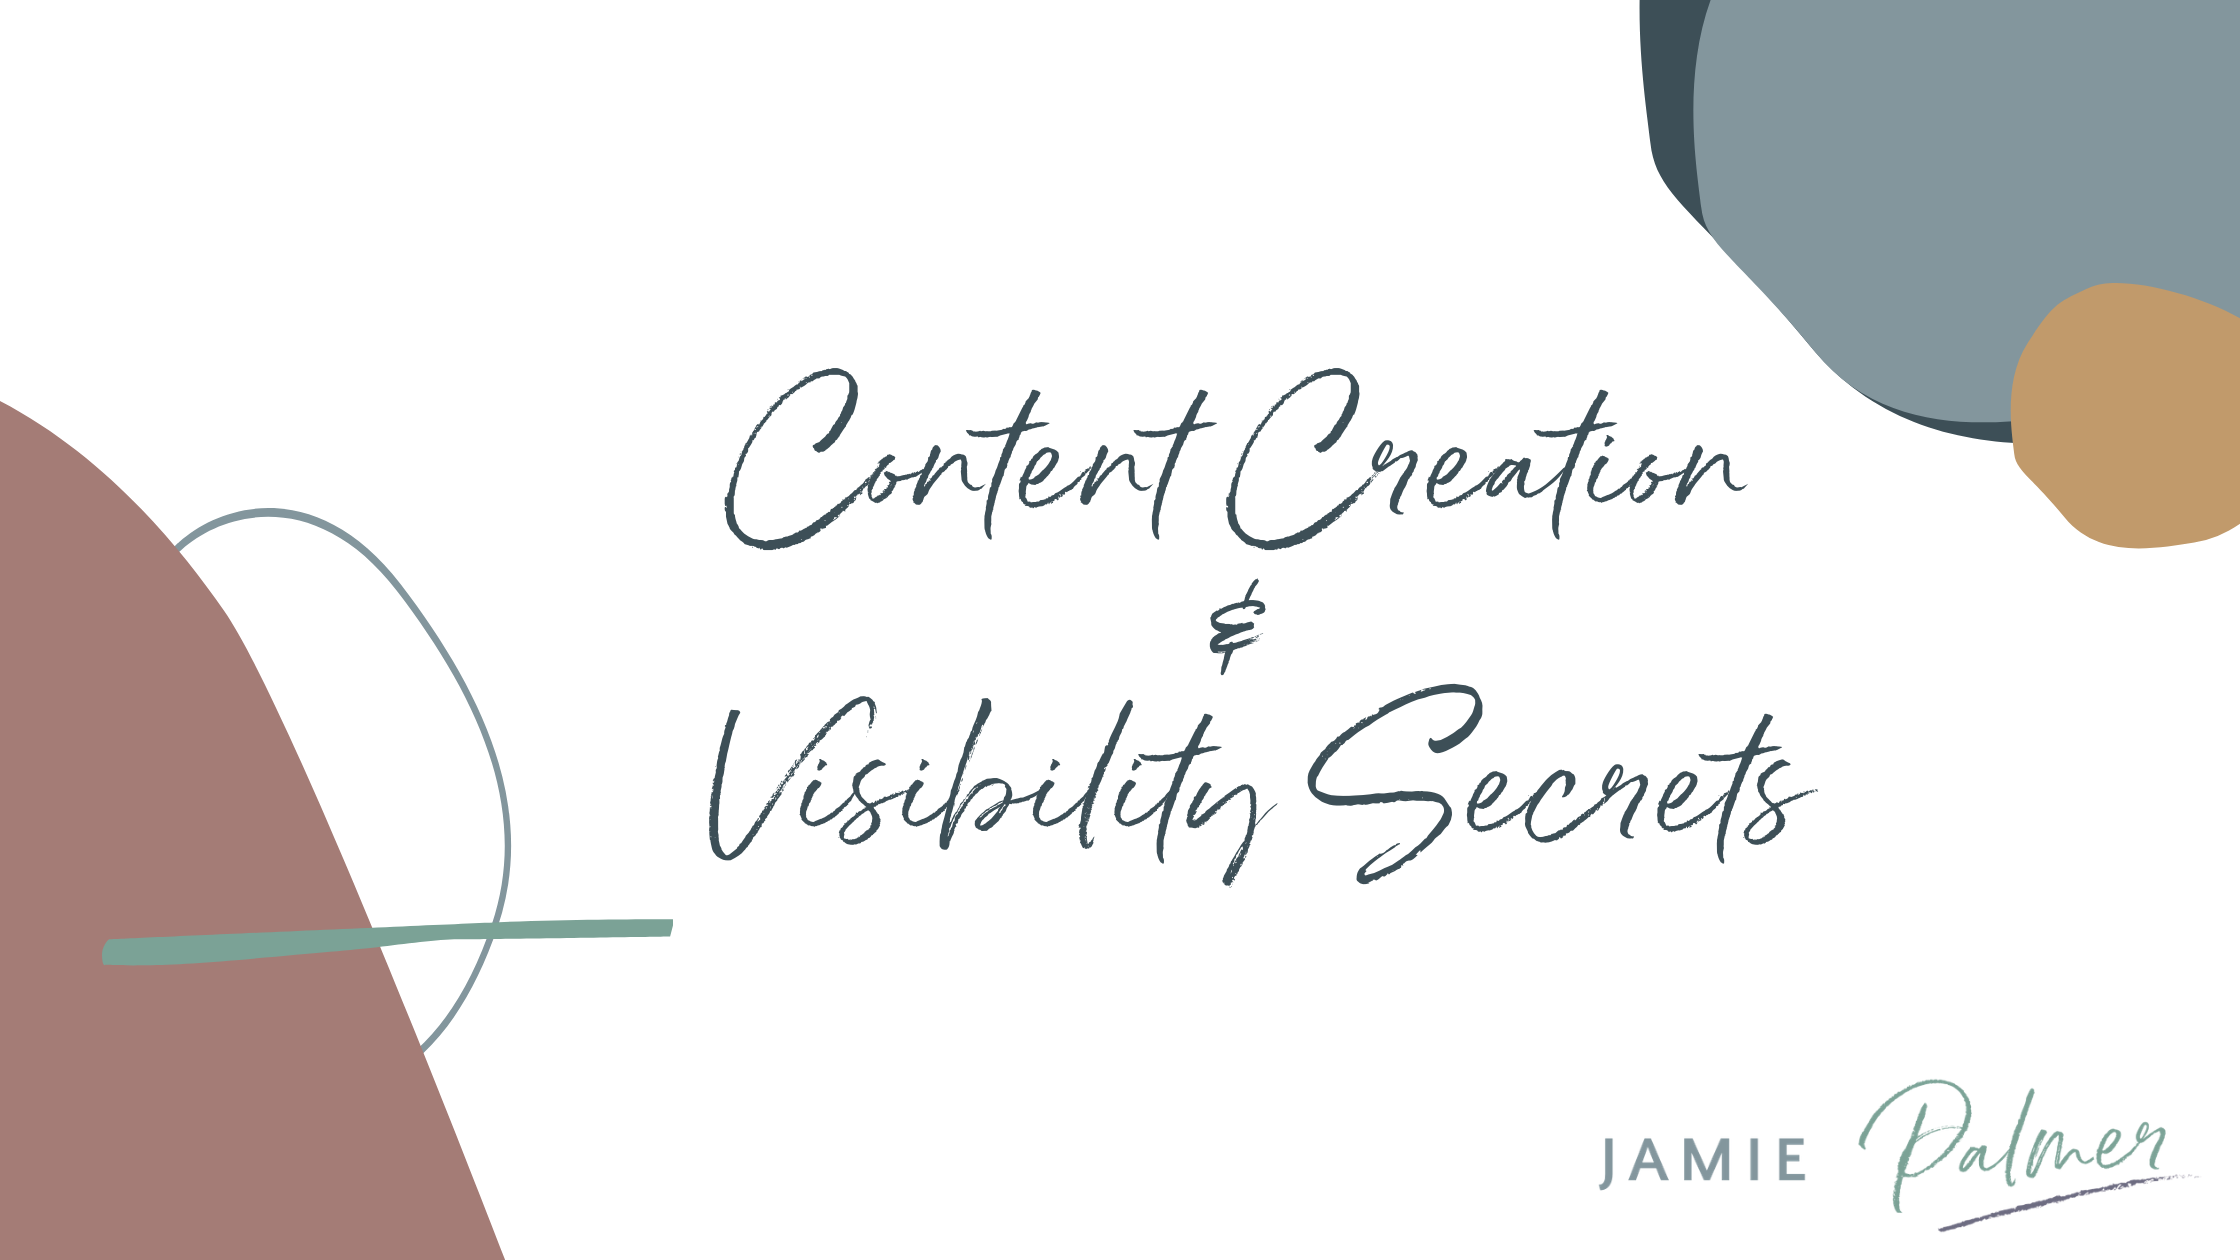 Content Creation & Visibility Secrets